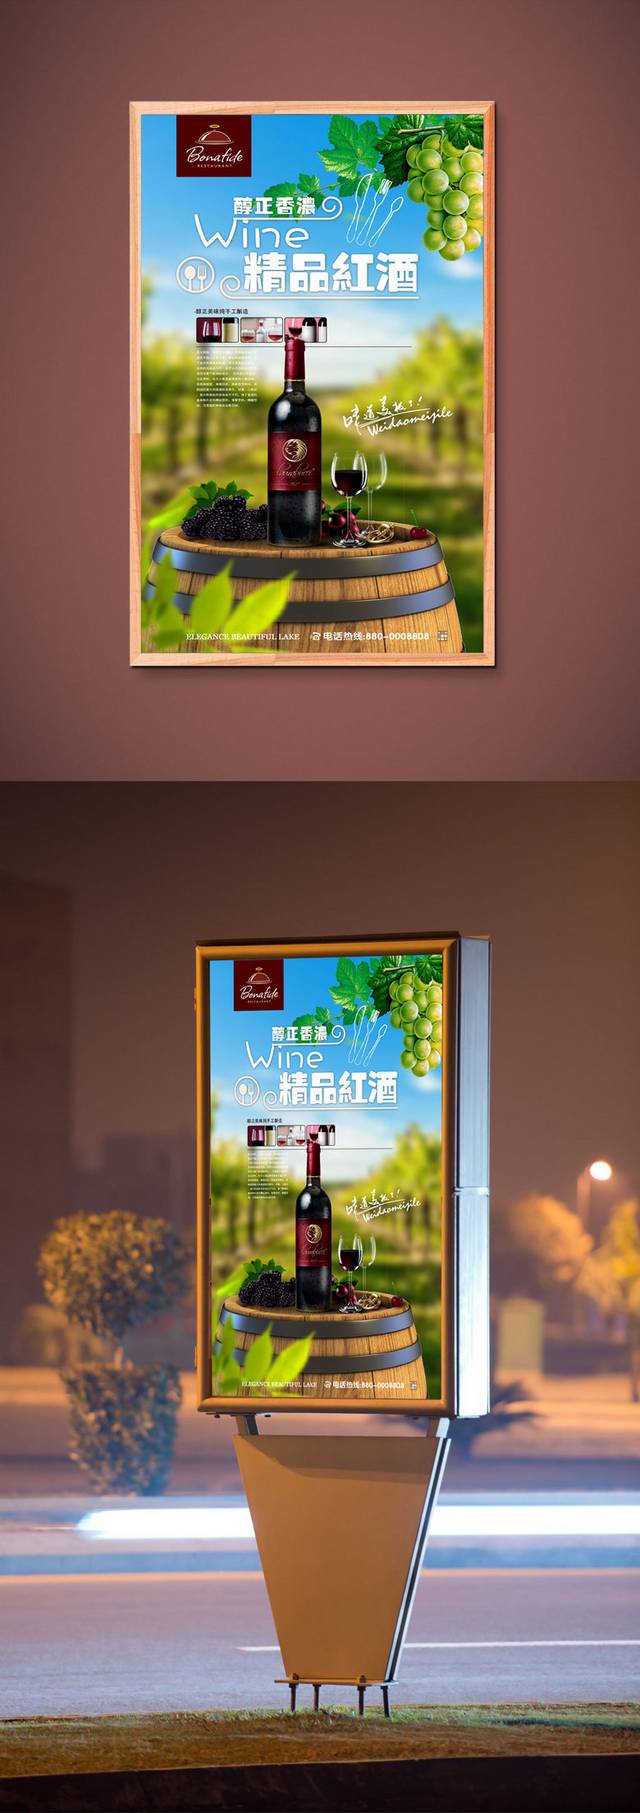 高档红酒宣传海报设计模板